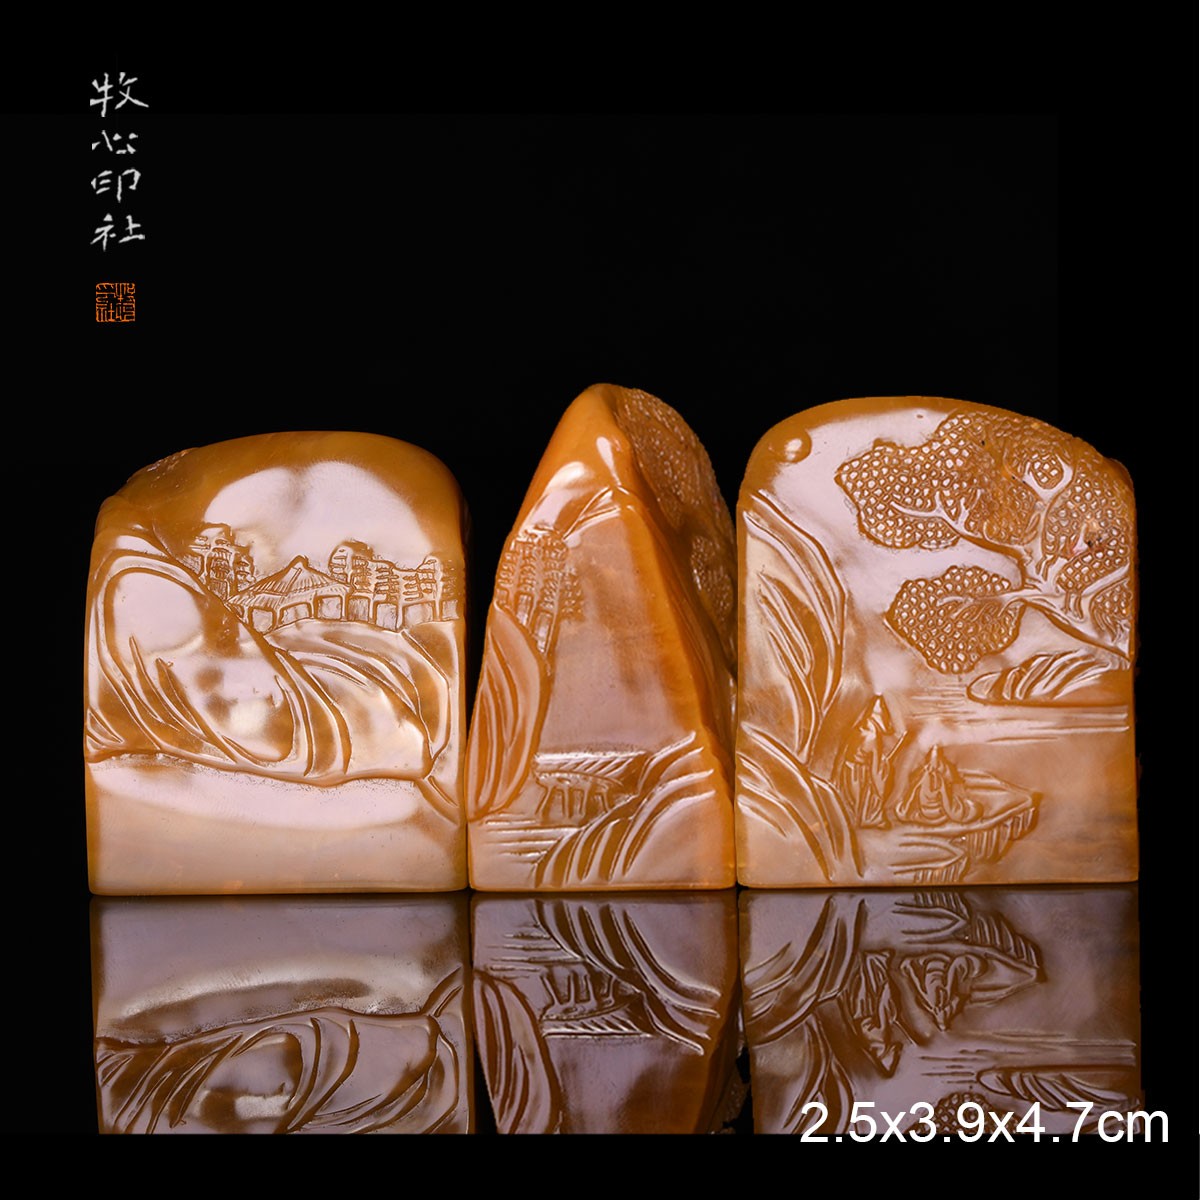 老挝北部黄山居即景手工篆刻印石书法书画定制石料2.5x3.9x4.7cm